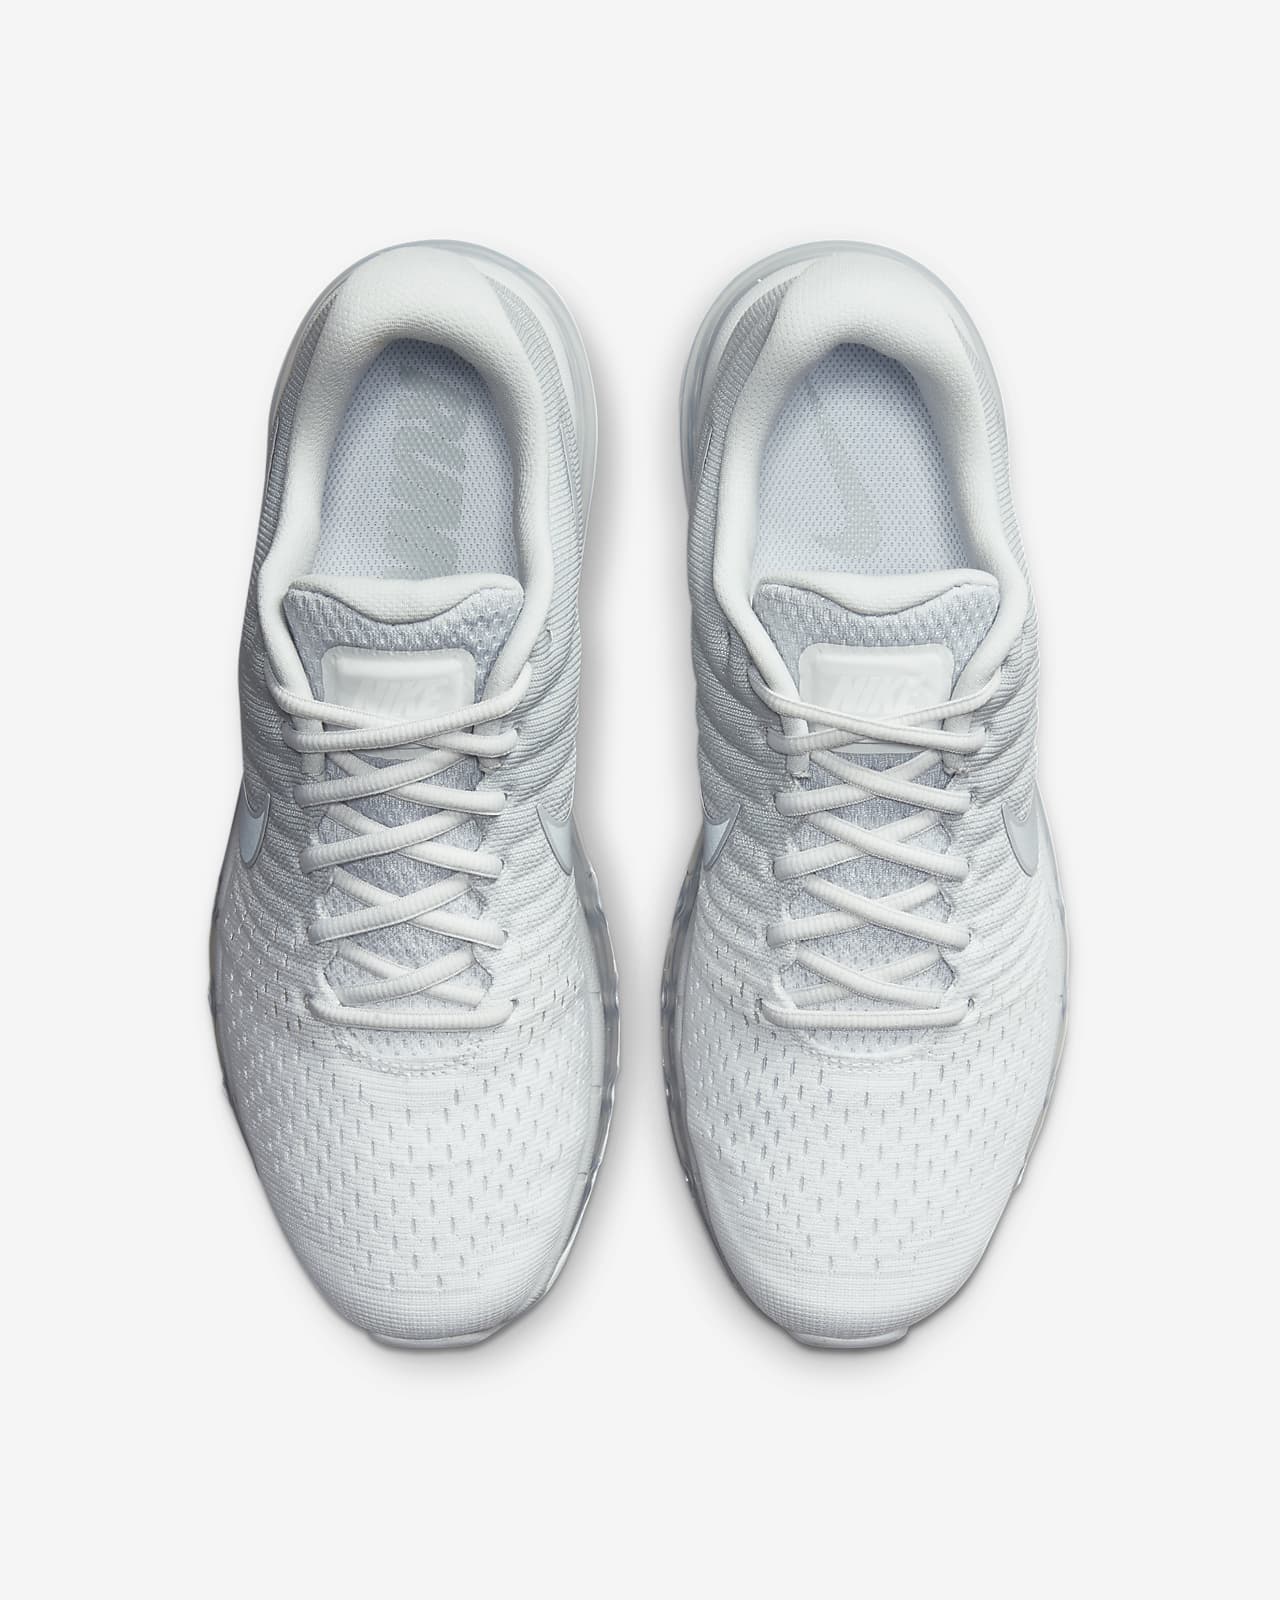 Dag leef ermee Zaailing Nike Air Max 2017 Men's Shoes. Nike.com